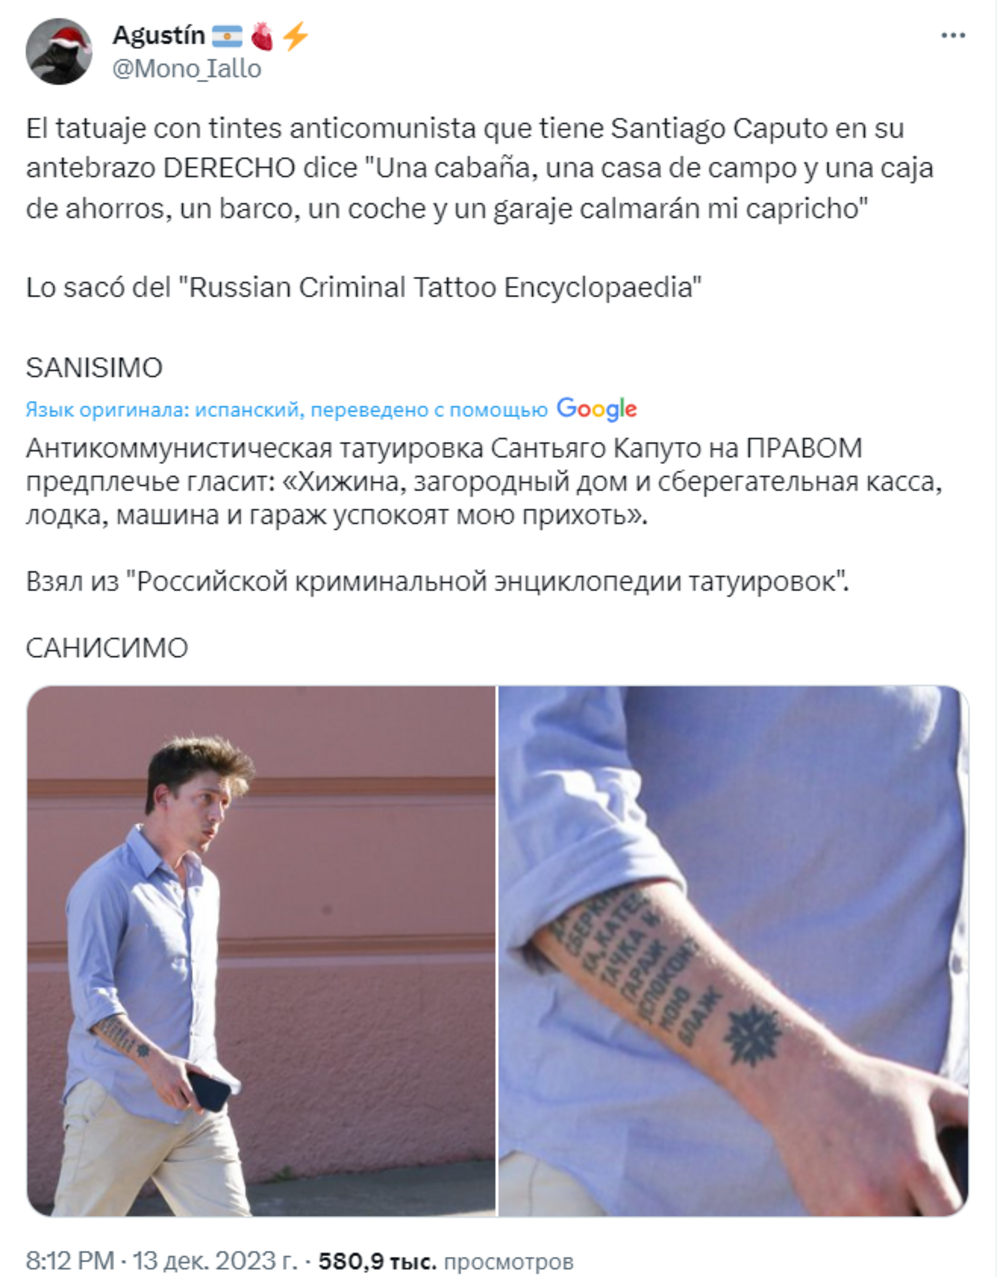 "Хата, дача и сберкнижка": на руке советника нового президента Аргентины увидели тюремные татуировки на русском языке